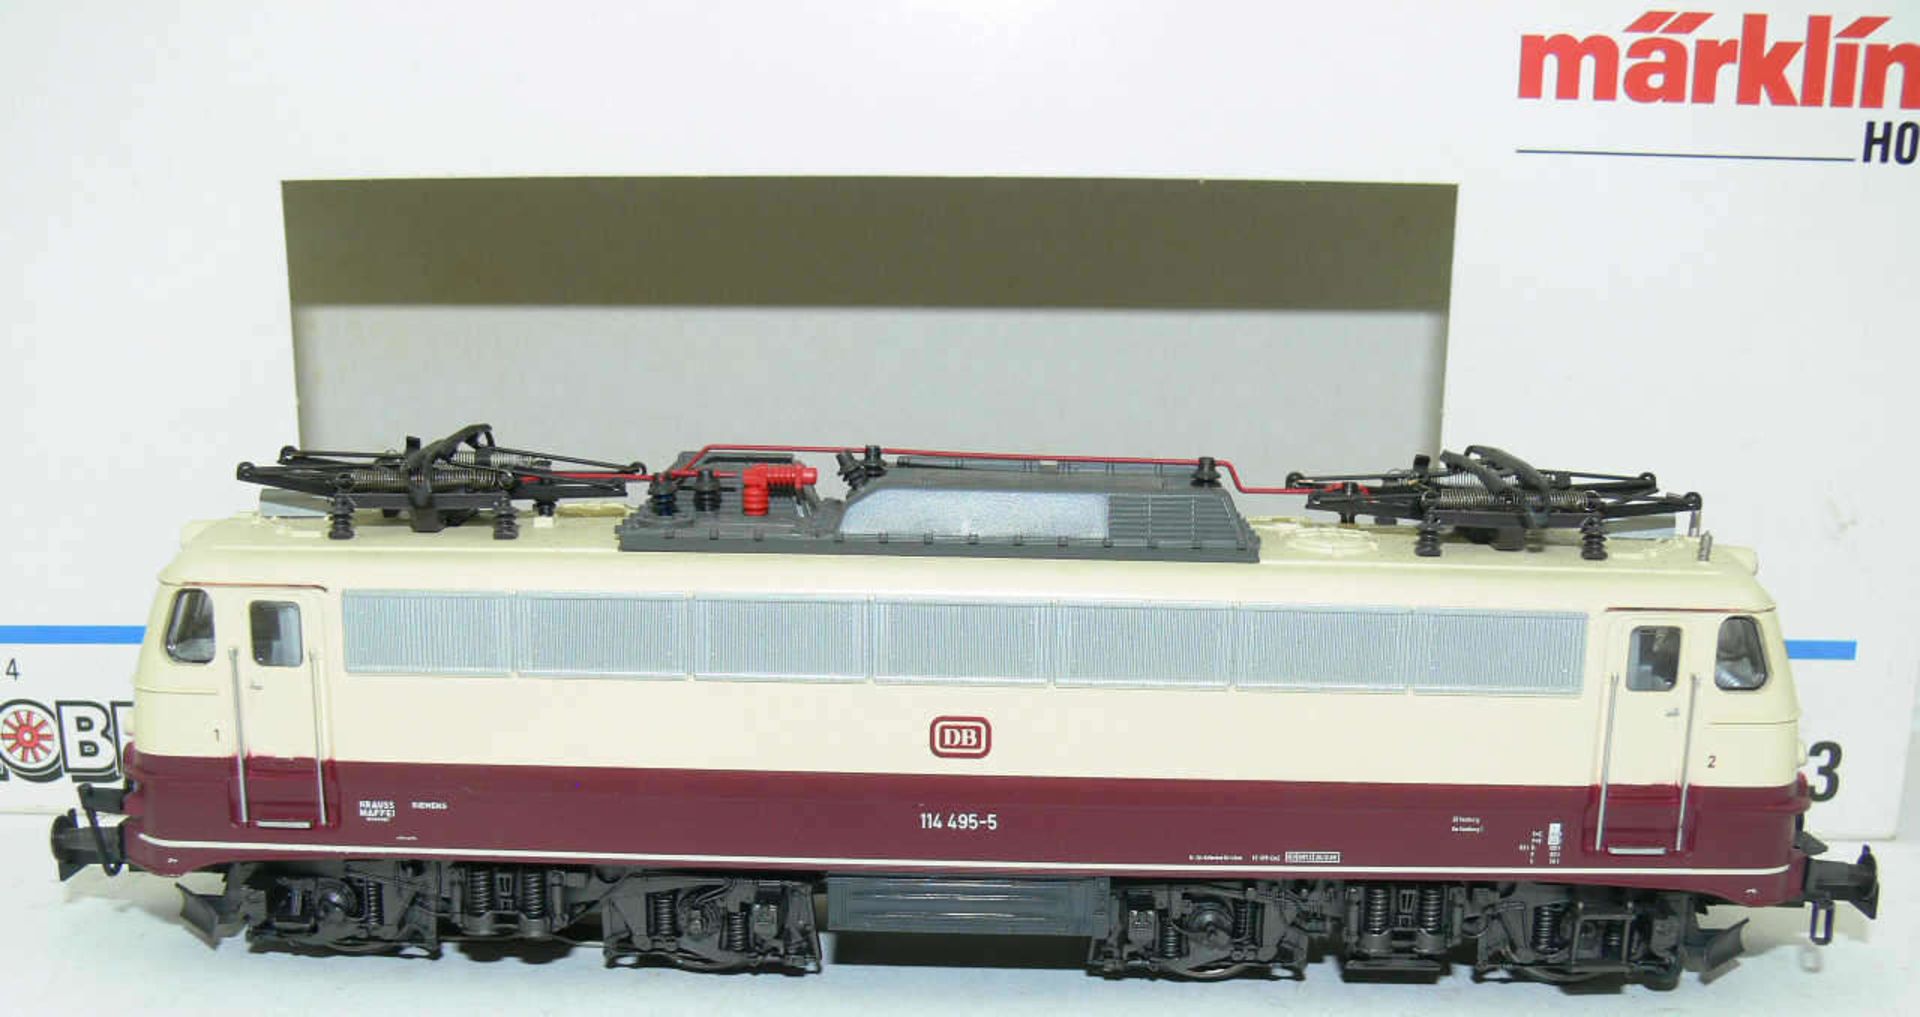 Märklin - Hobby 3033, E - Lokomotive BR 114 der DB. BN 114 495-5. Sehr guter Zustand in OVP.